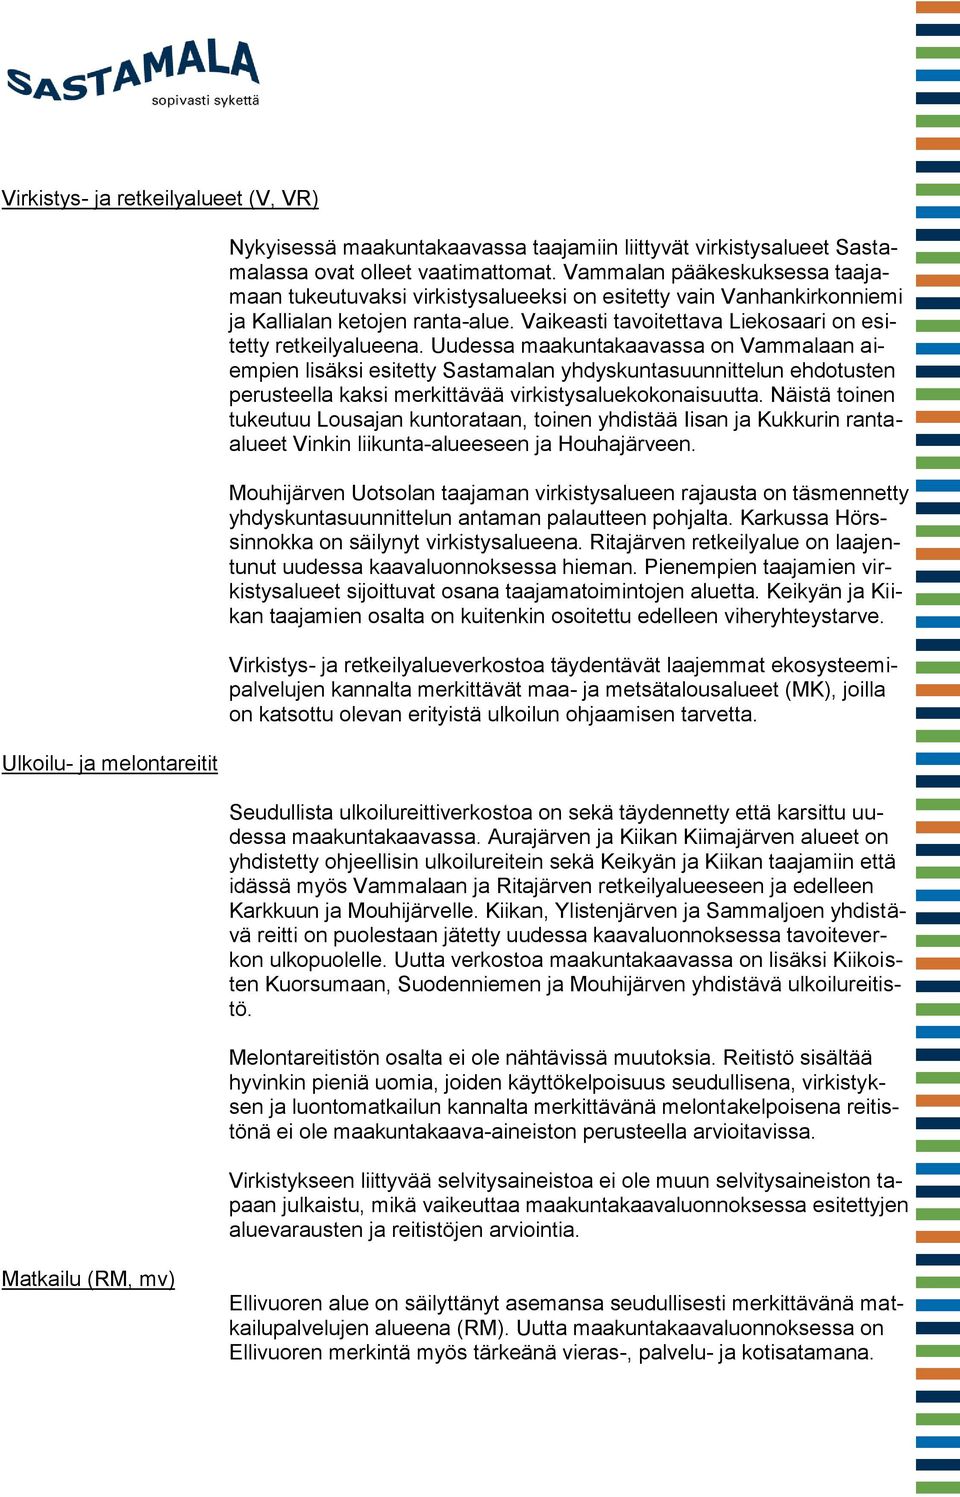 Uudessa maakuntakaavassa on Vammalaan aiempien lisäksi esitetty Sastamalan yhdyskuntasuunnittelun ehdotusten perusteella kaksi merkittävää virkistysaluekokonaisuutta.